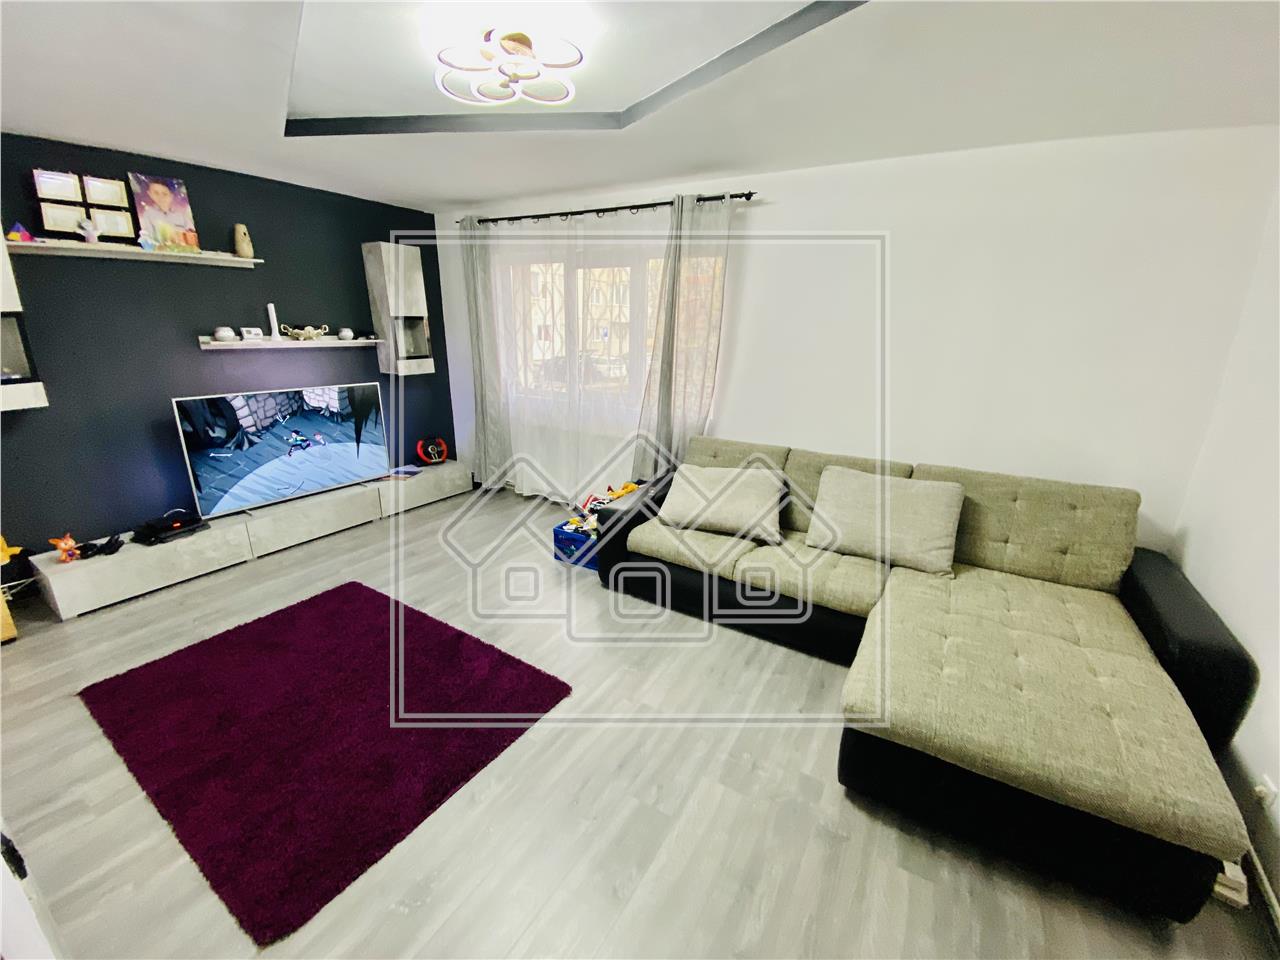 Apartament de vanzare in Sibiu - 3 camere si pivnita - Zona Turnisor